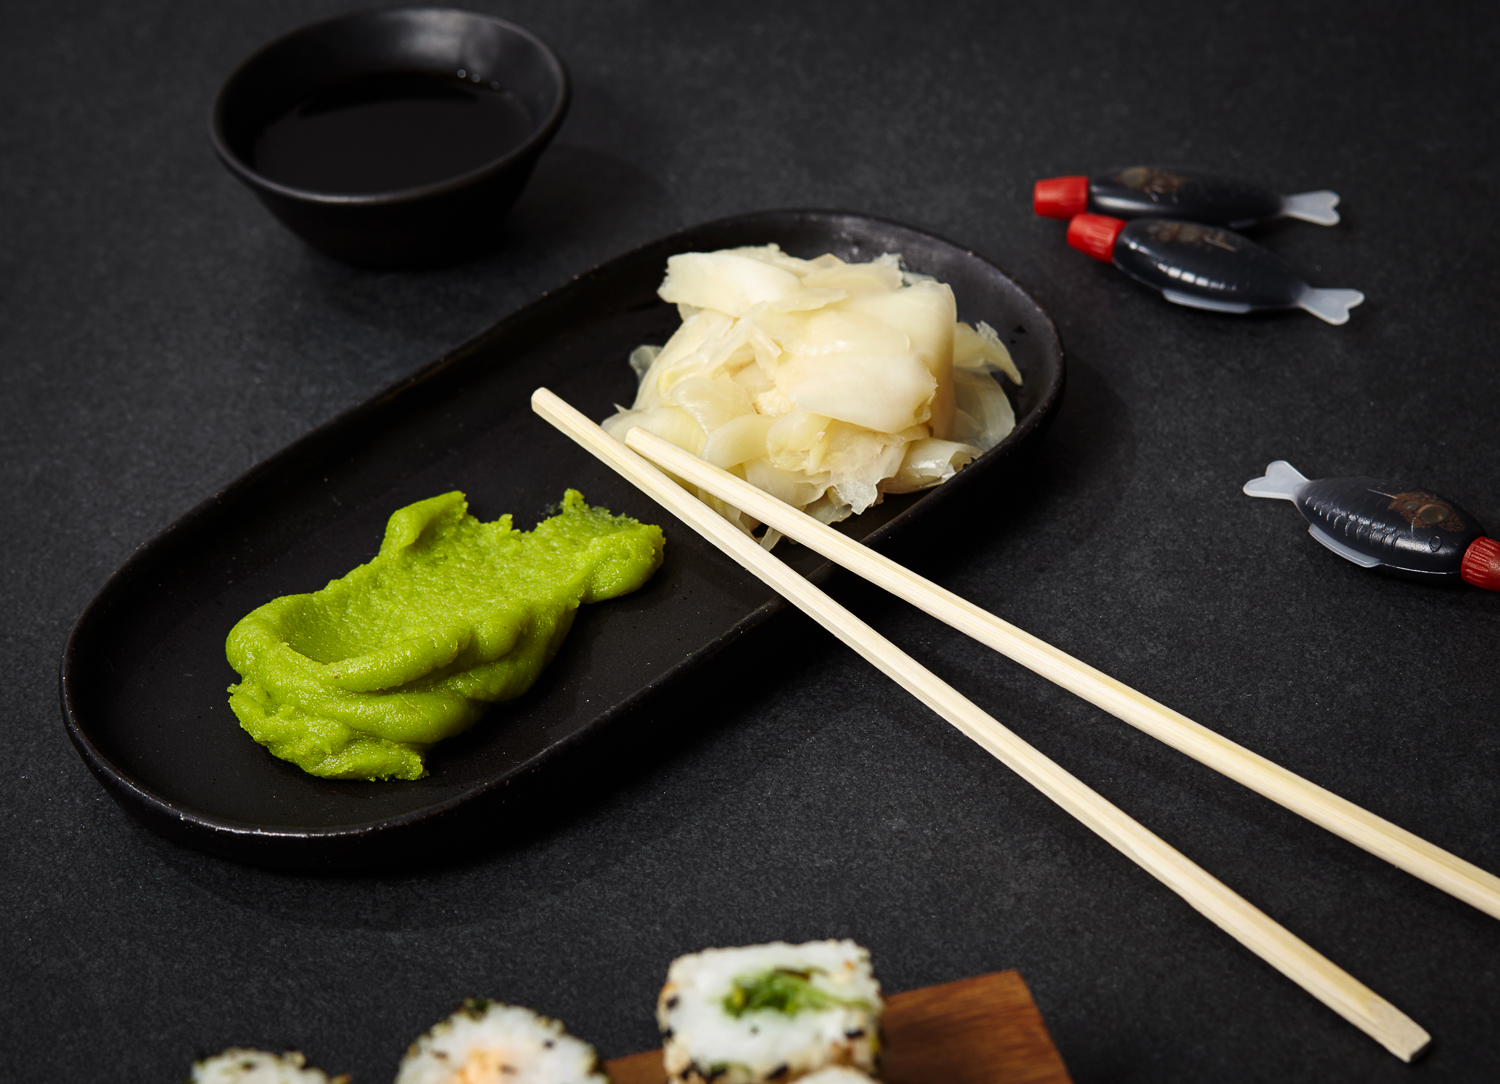 Wasabi paste kaufen - Die hochwertigsten Wasabi paste kaufen auf einen Blick!